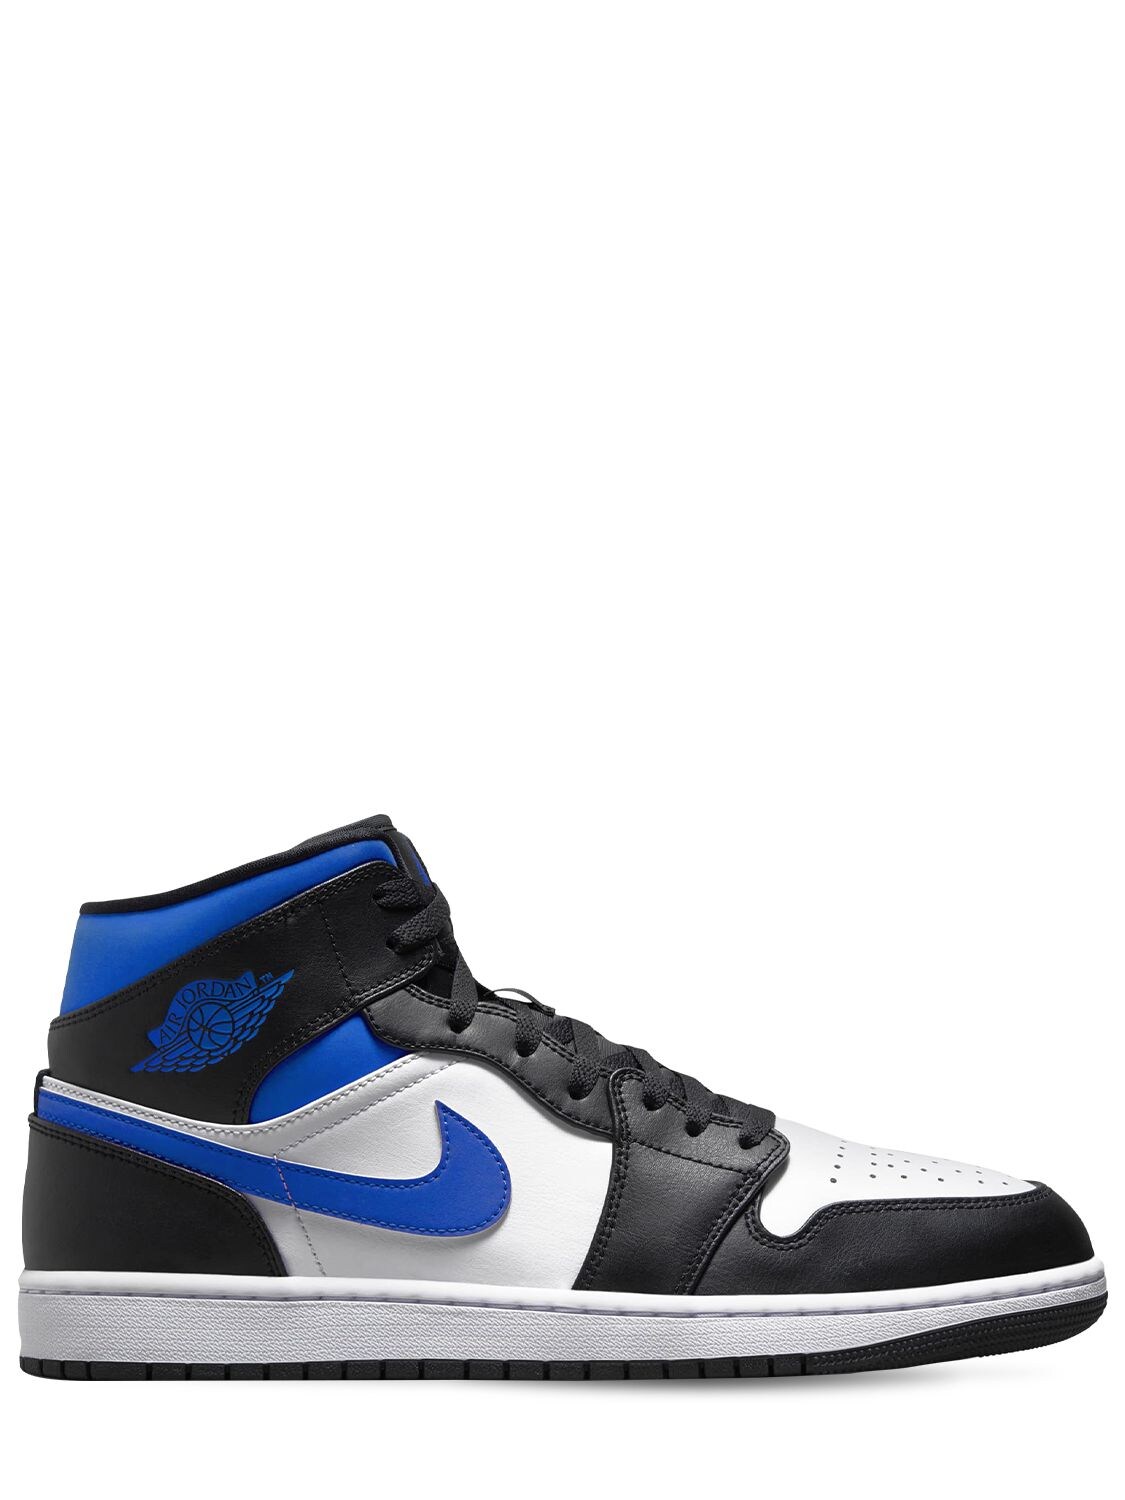 Nike Air Jordan 1 Mid Sneakers In Racer Blue | ModeSens